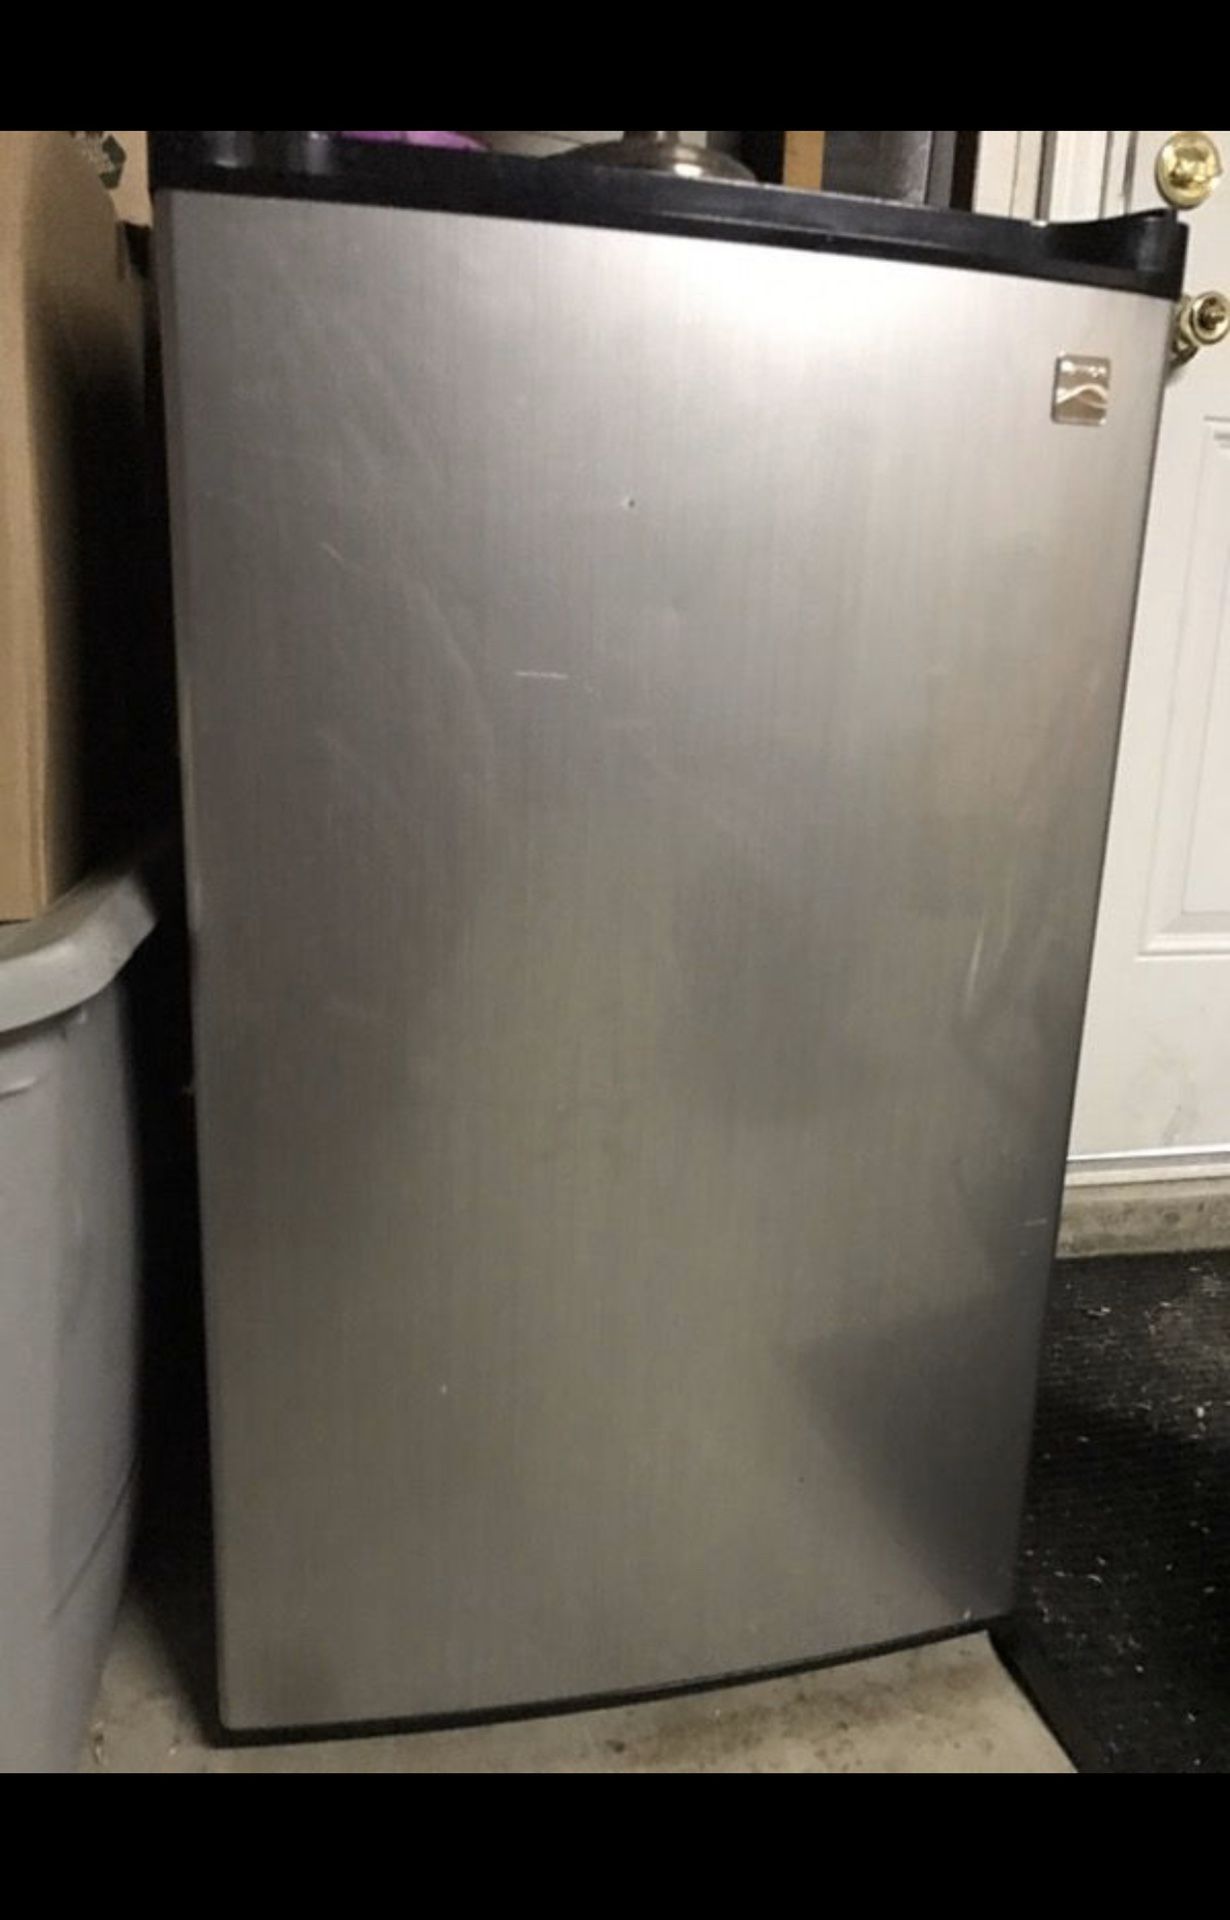 Kenmore mini fridge